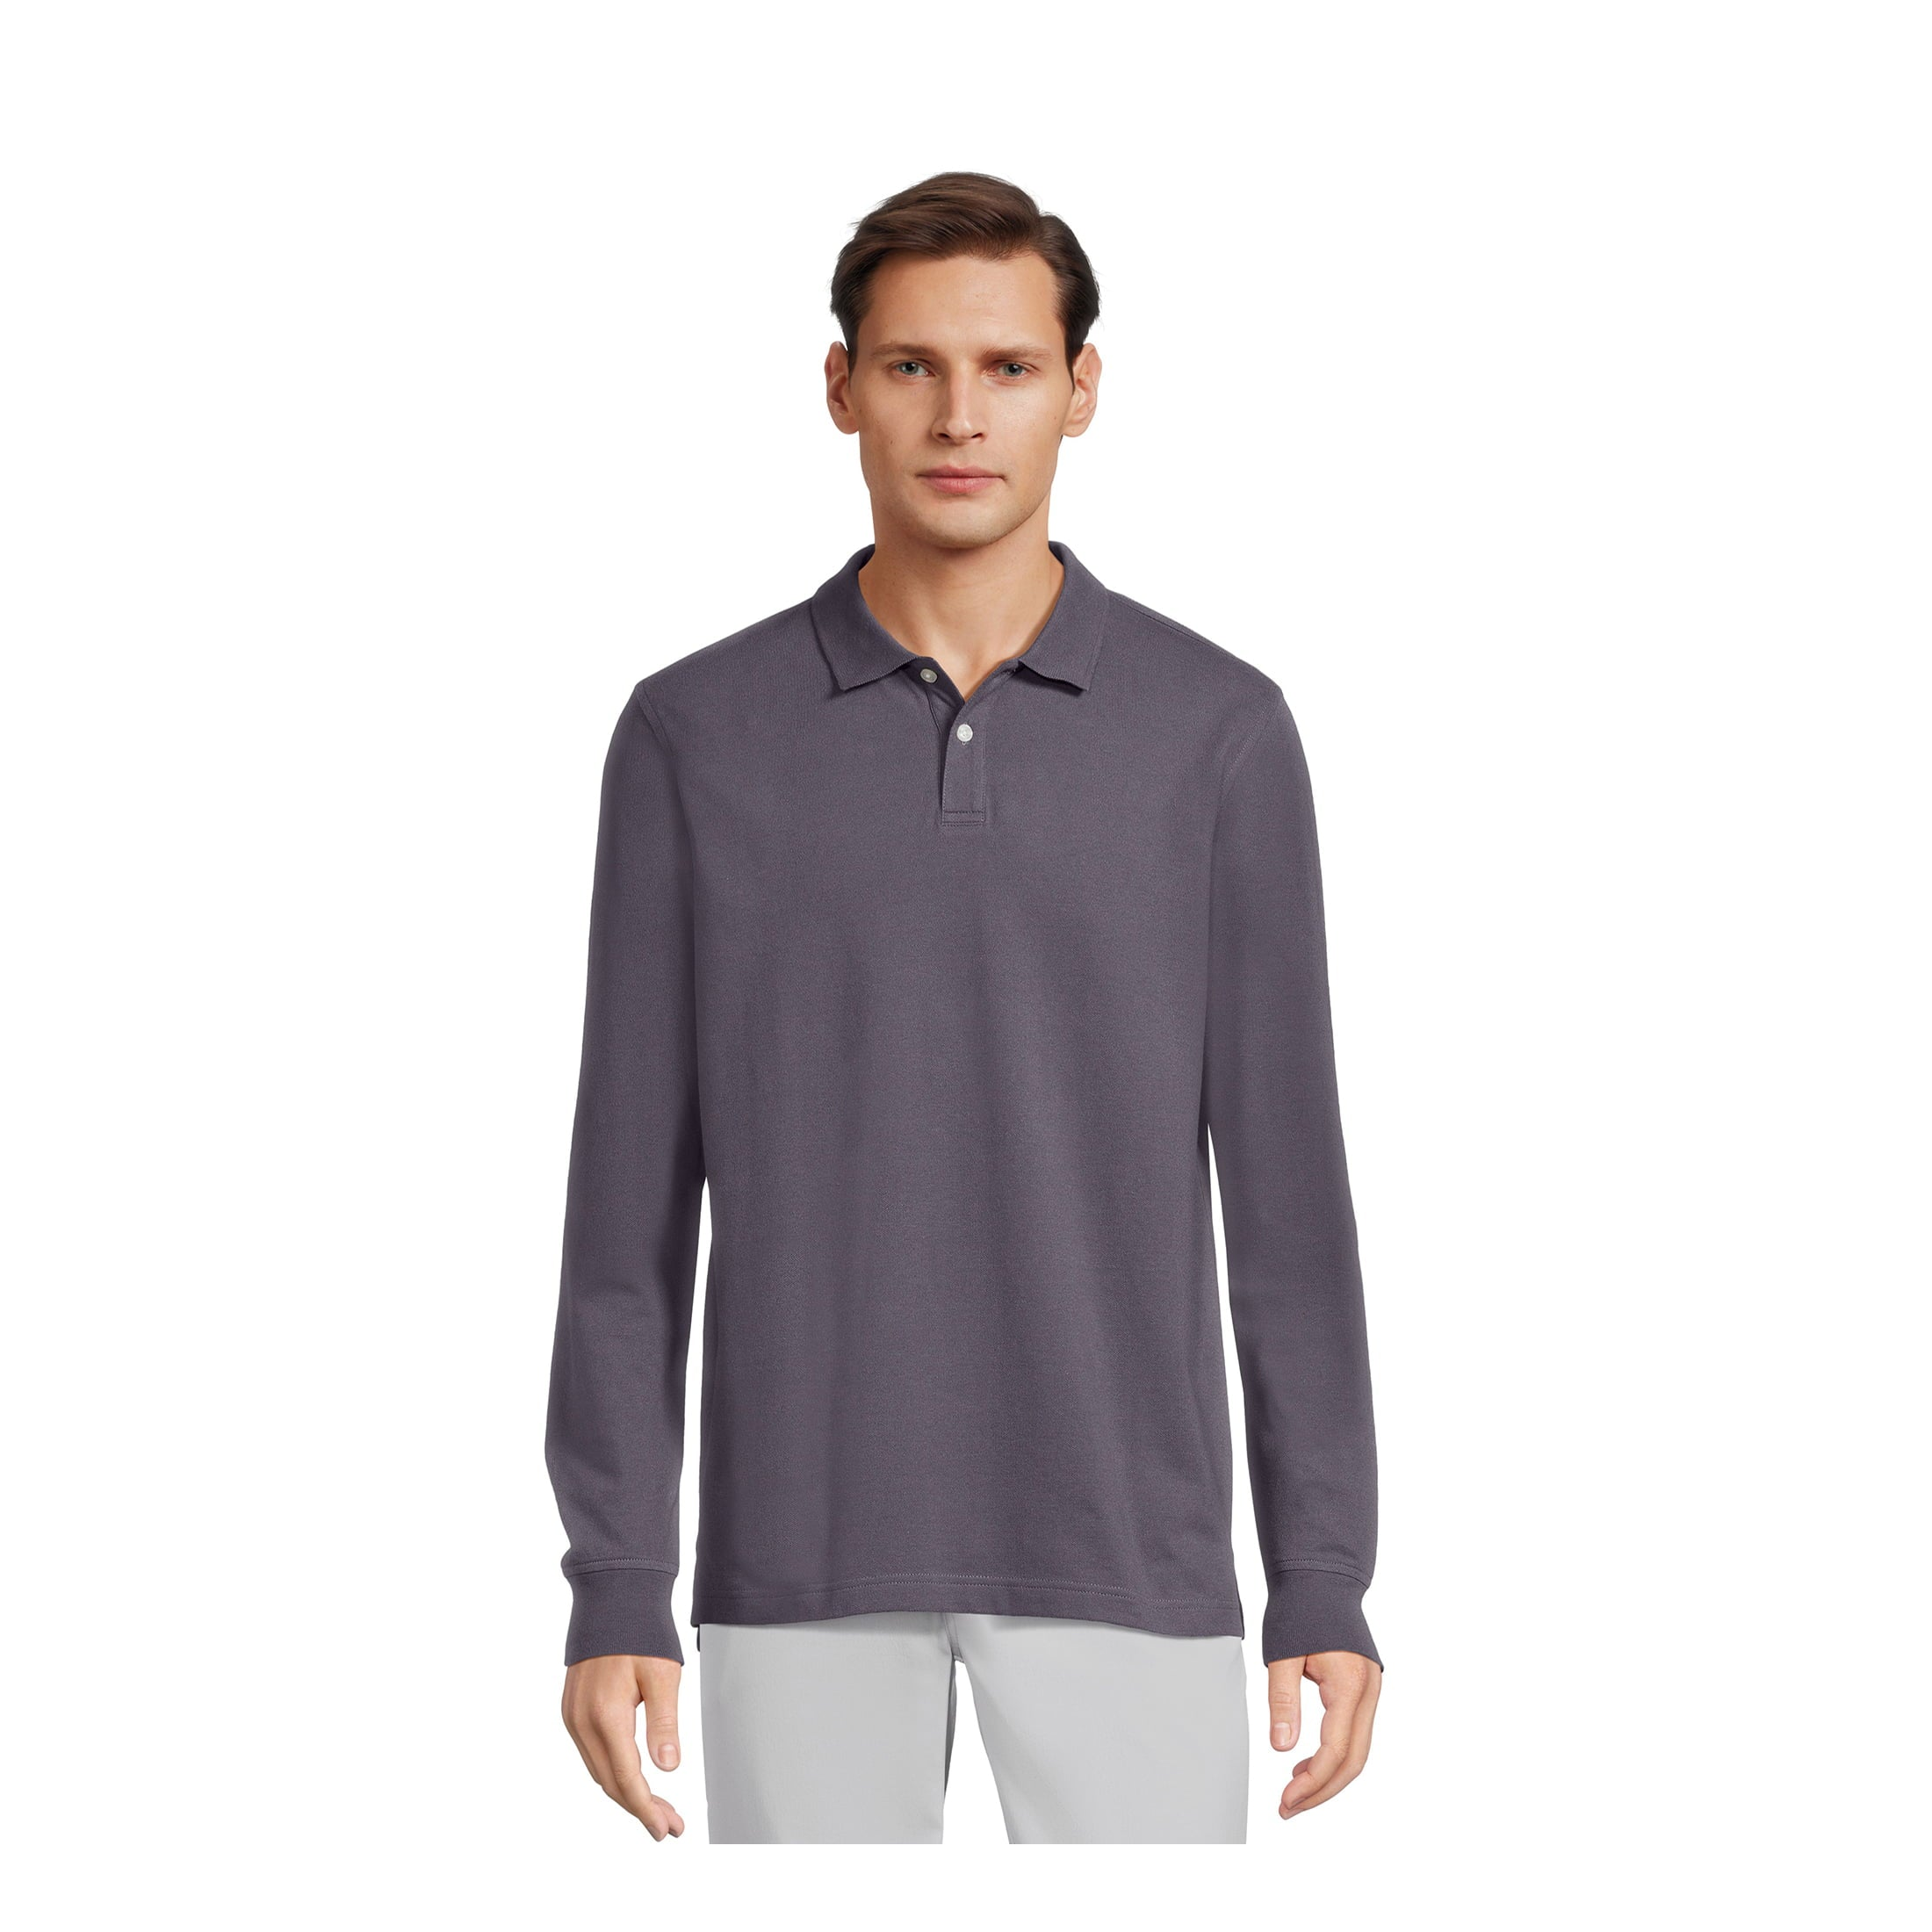 Long Sleeve Polo Shirts (3 Colors)